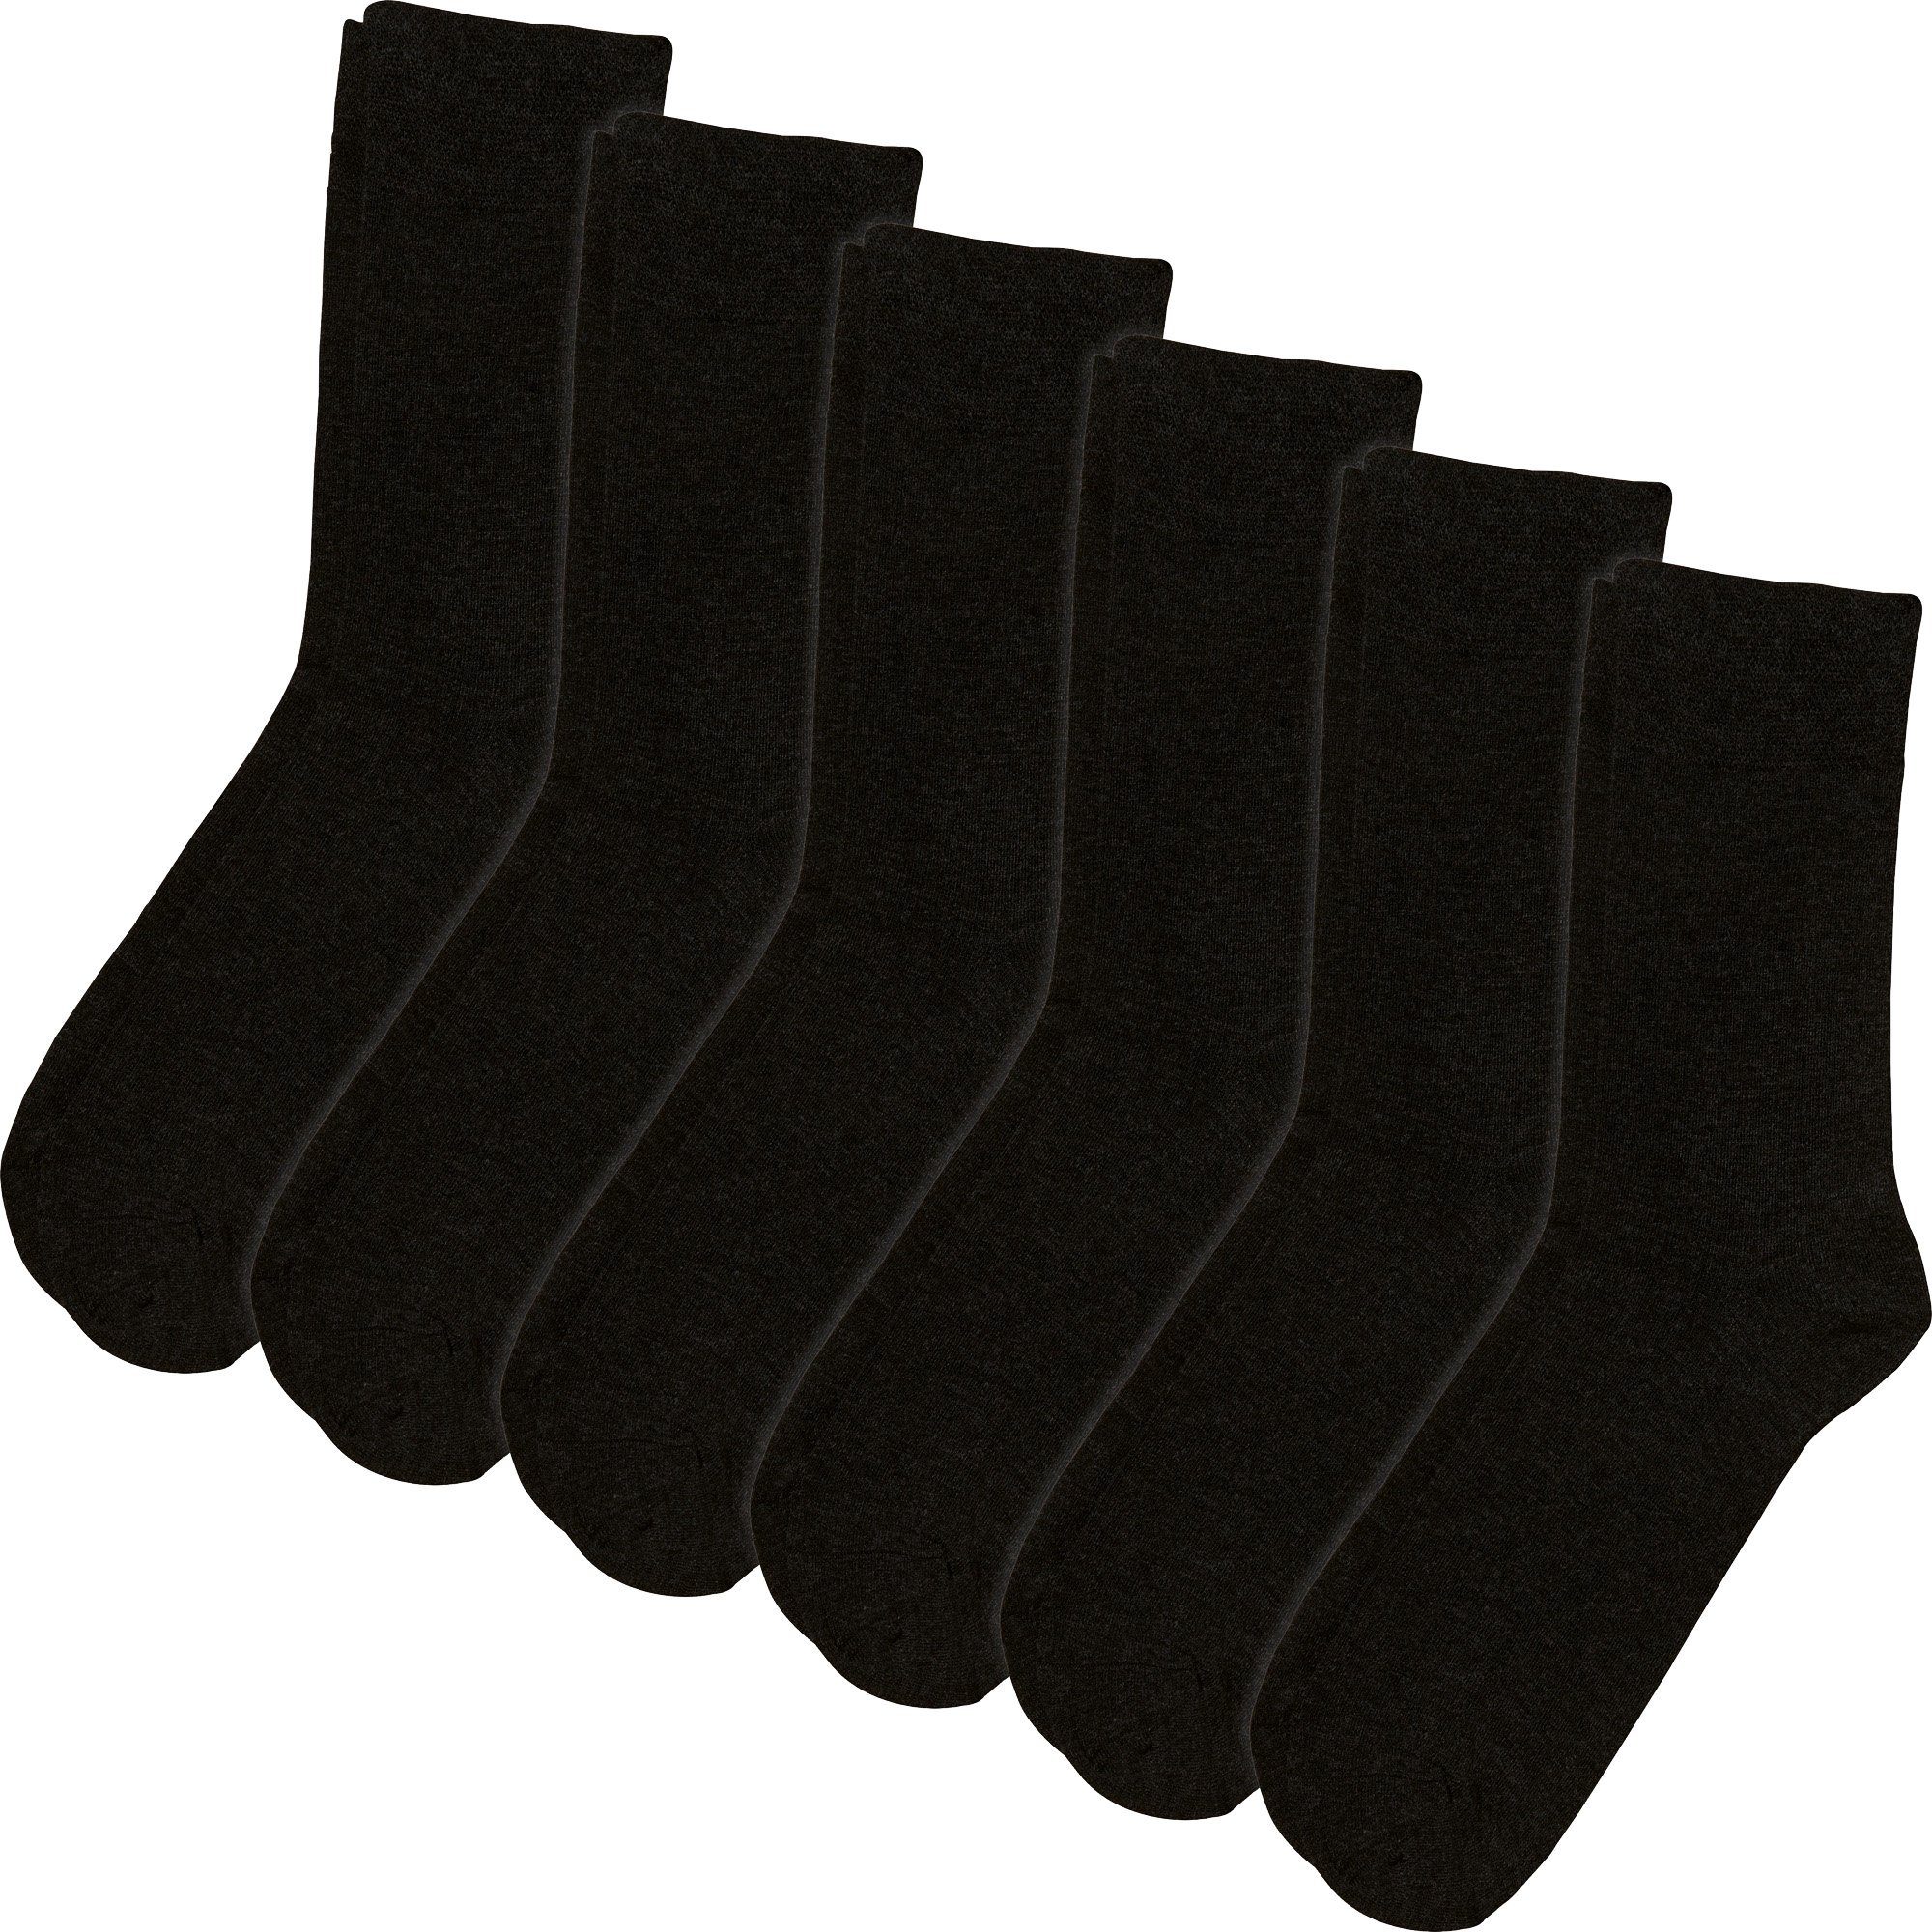 Erwin Herren-Socken Uni Paar schwarz Socken Müller (12-Paar) 6